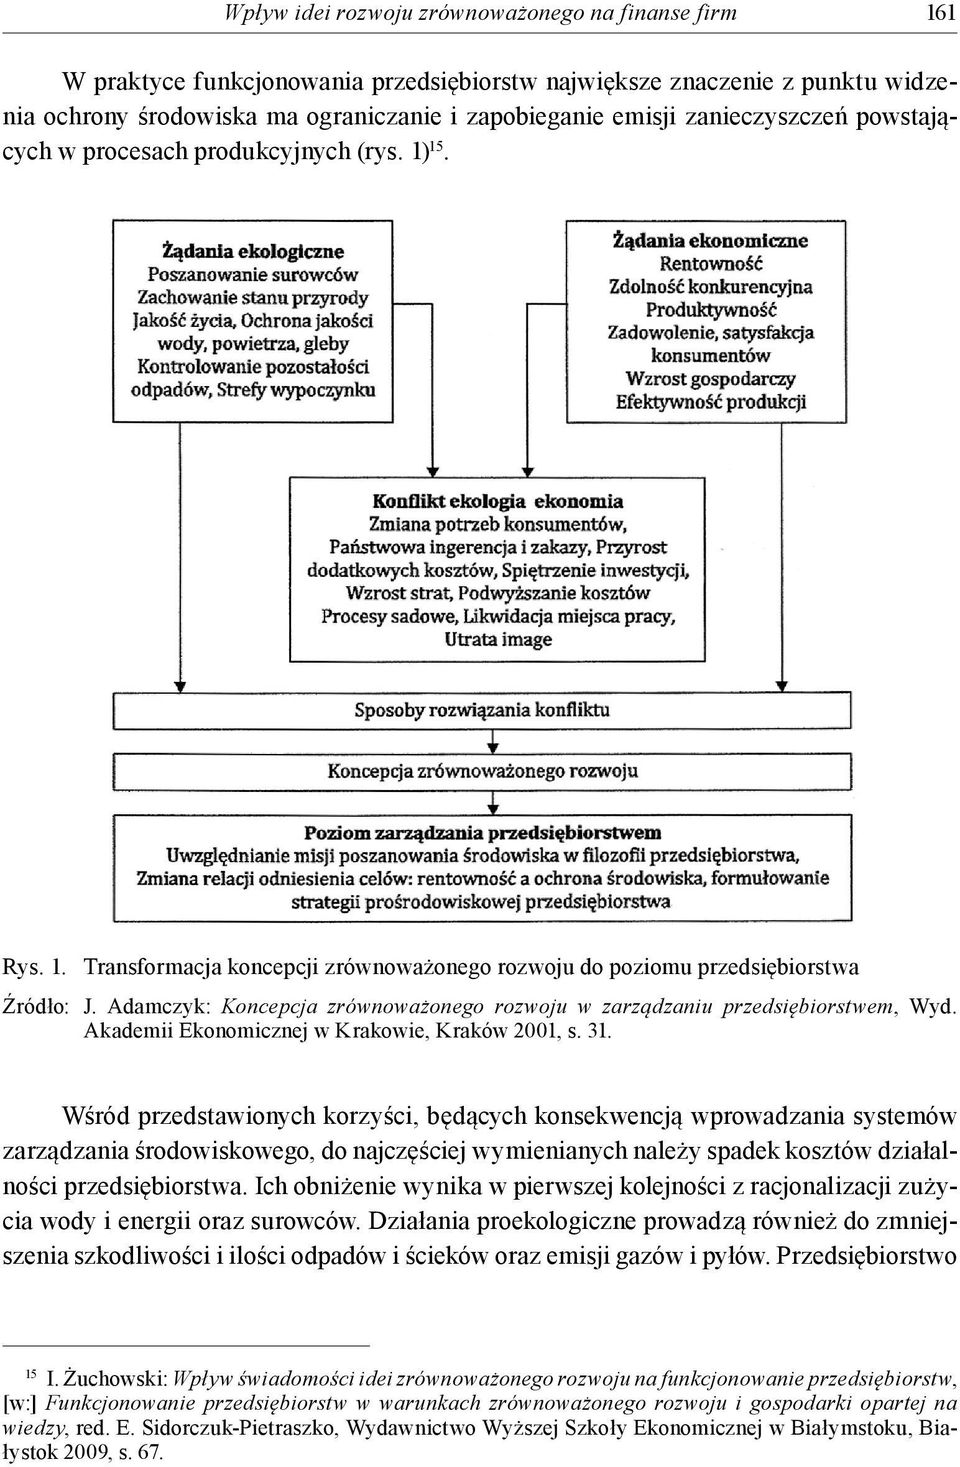 Adamczyk: Koncepcja zrównoważonego rozwoju w zarządzaniu przedsiębiorstwem, Wyd. Akademii Ekonomicznej w Krakowie, Kraków 2001, s. 31.